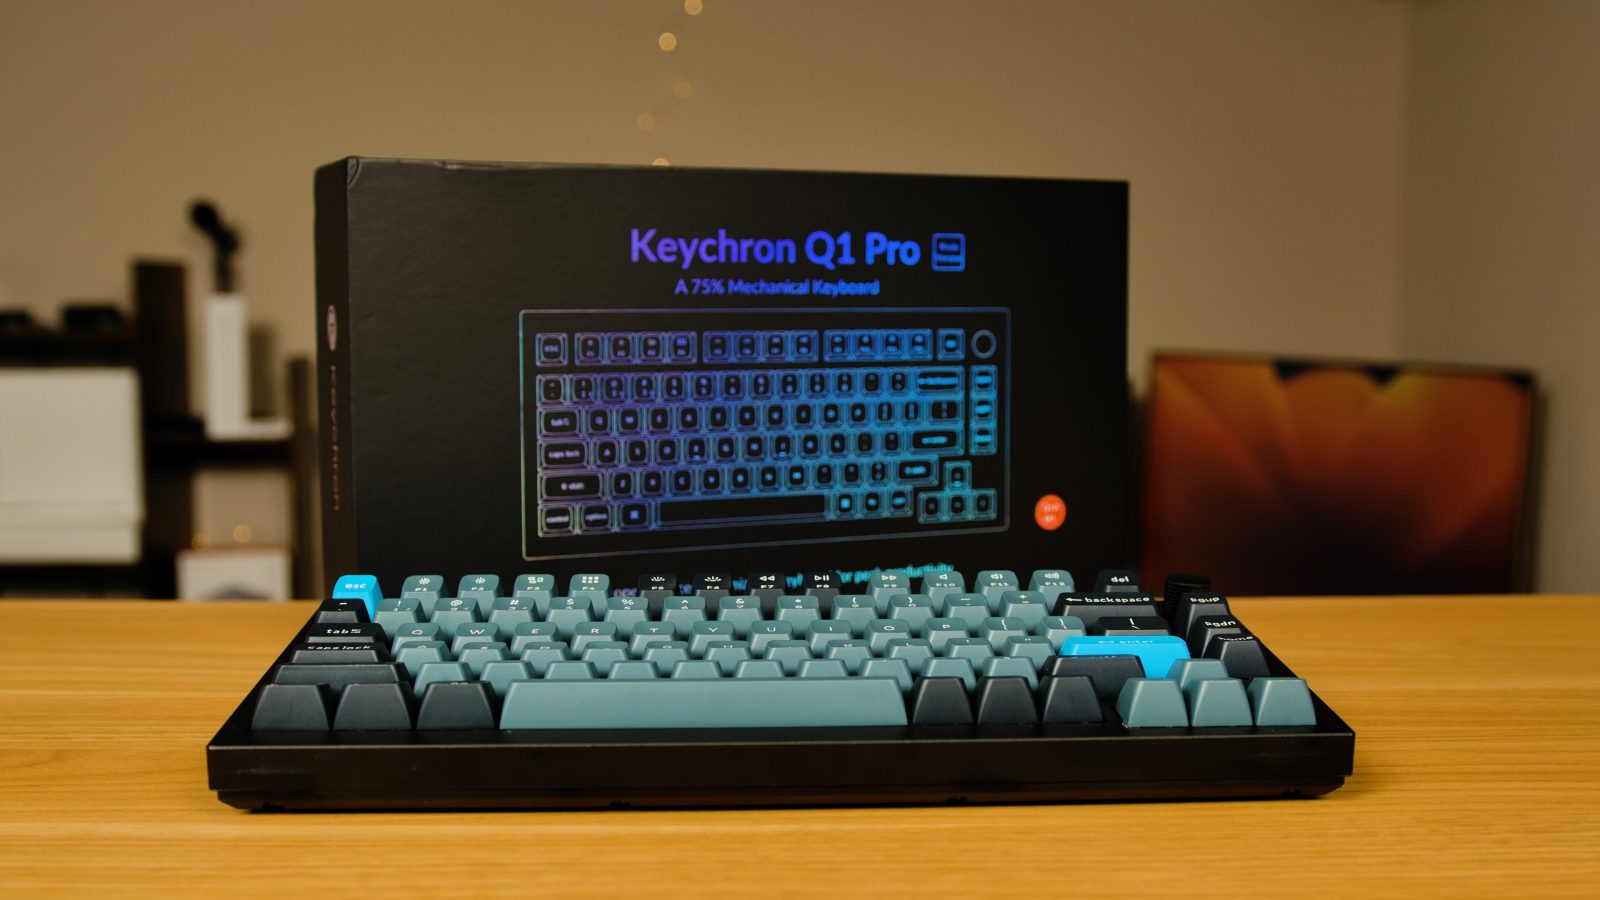 Keychron Q1 Pro mechanical keyboard